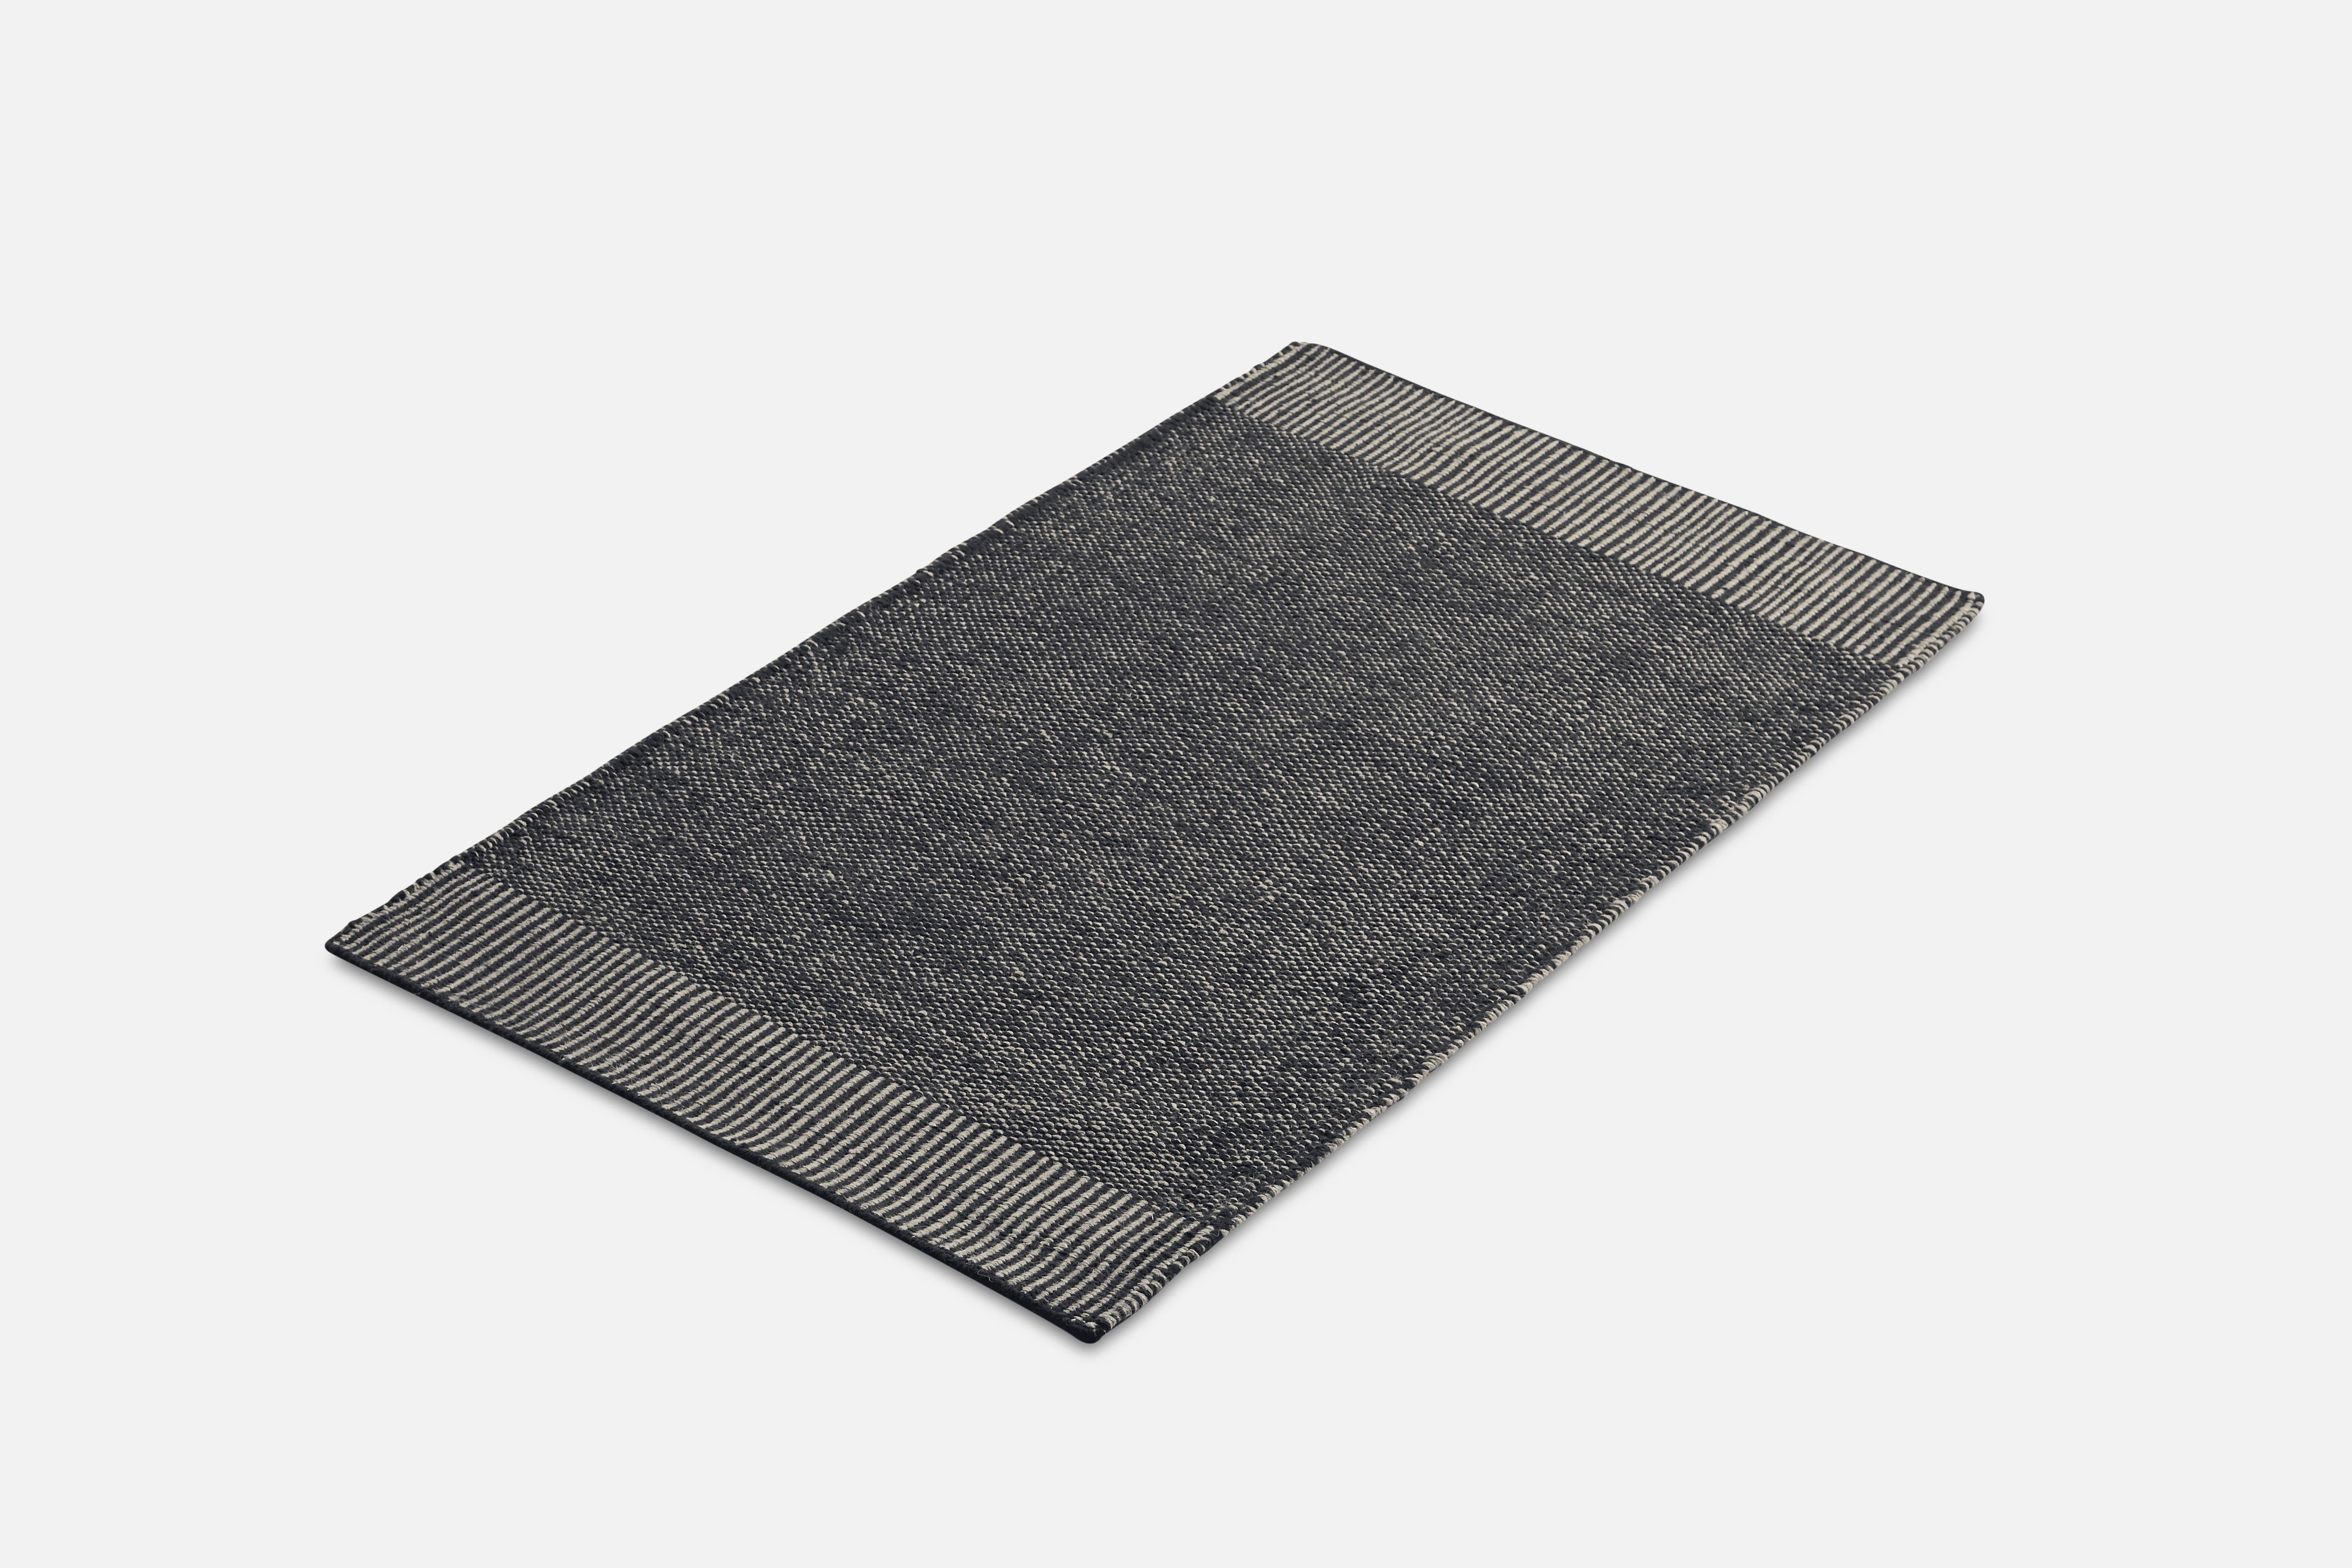 Kleiner grauer teppich Rombo von Studio MLR
MATERIALIEN: 65% Wolle, 35% Jute.
Abmessungen: B 90 x L 140 cm
Erhältlich in 3 Größen: B90 x L140, B170 x L240, B75 x L200 cm.
Erhältlich in Grau, Moosgrün und Rost.

Rombo zeichnet sich durch die